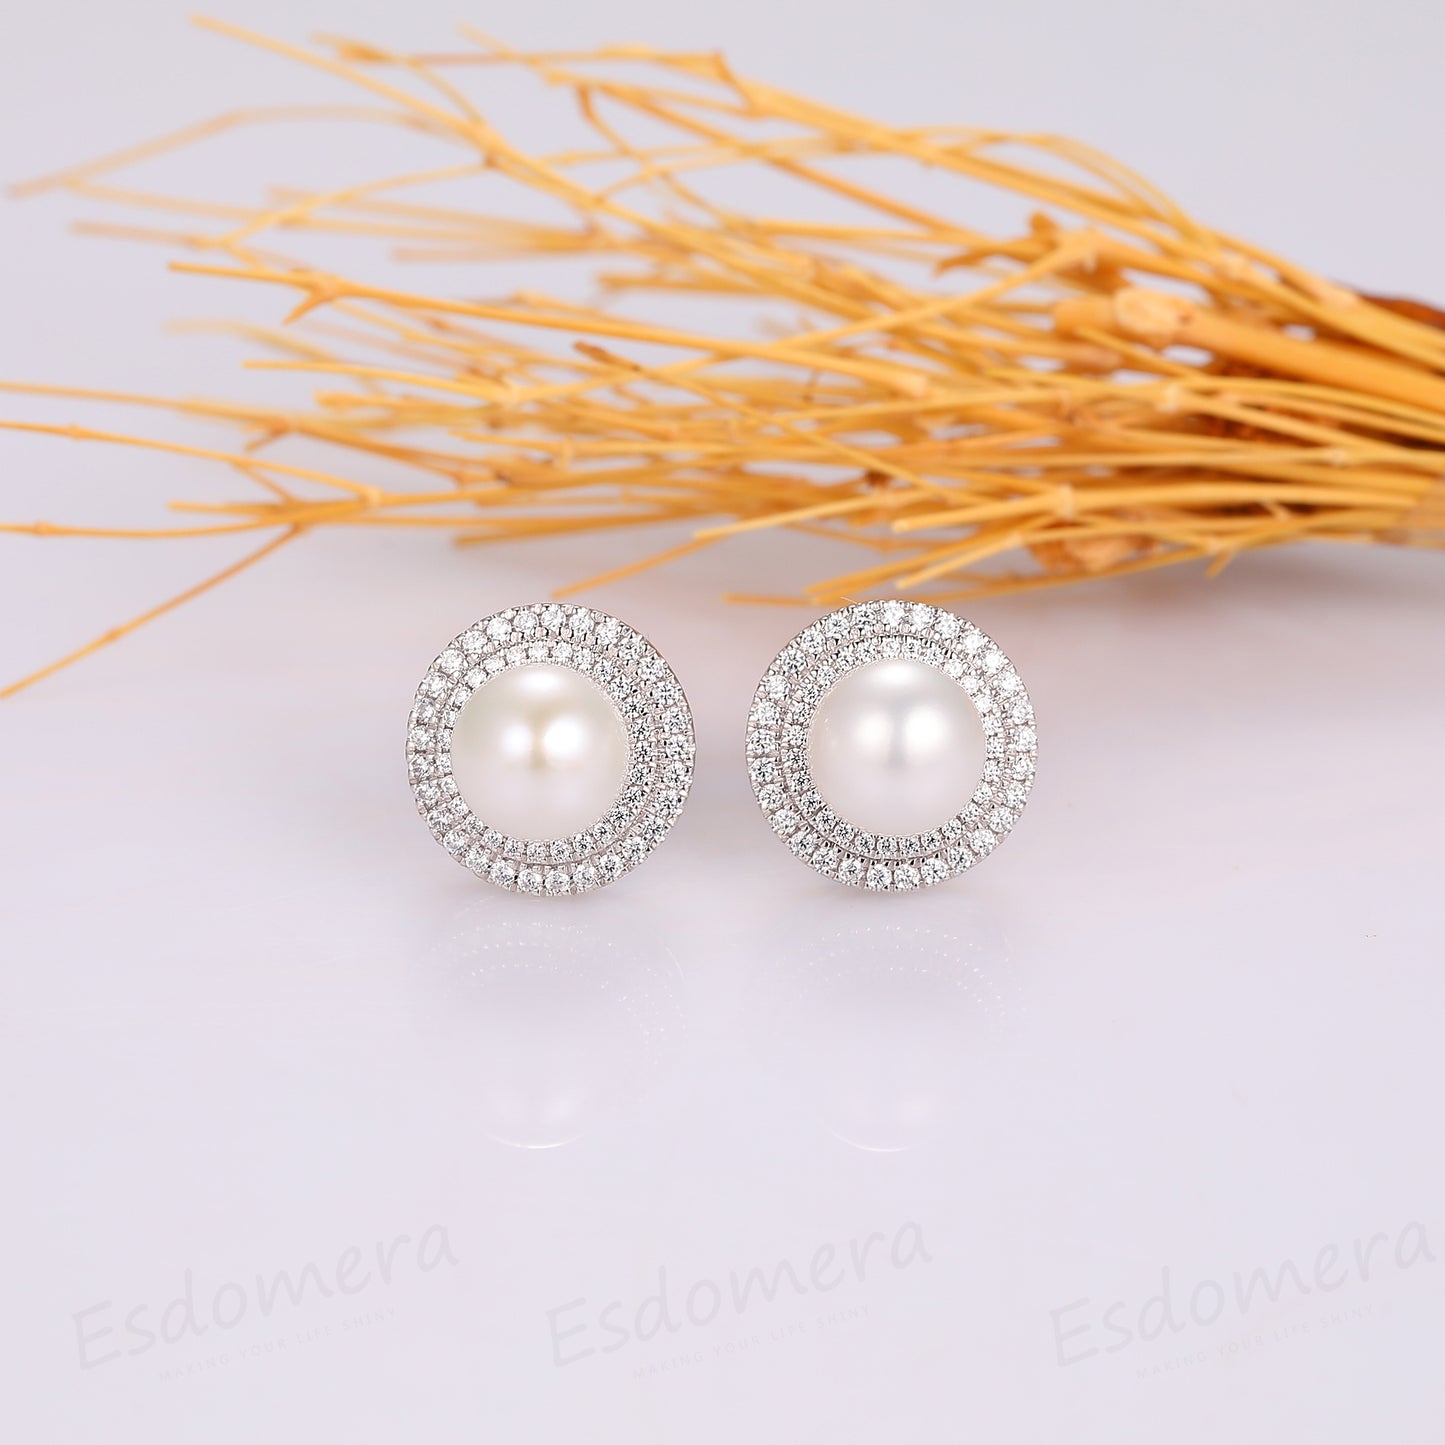 Vintage 7mm Round Shape Natural Pearl Wedding Stud Earrings